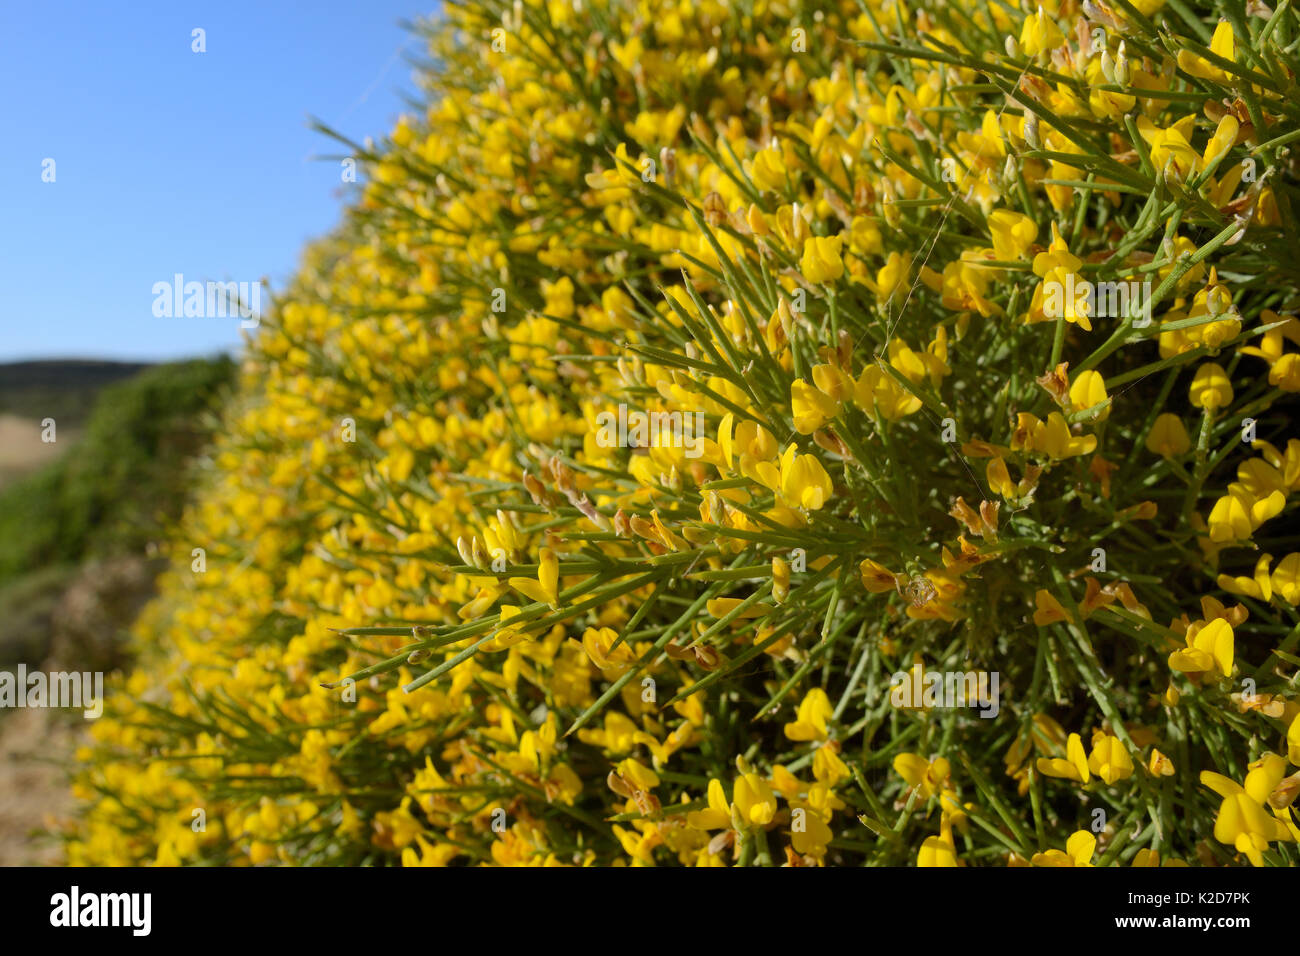 Büschel der niedrig wachsenden Ginster (Genista acanthoclada) mit stacheligen Blätter unter Garrigue/phrygana Buschland, Lassithi, Kreta, Griechenland, Mai 2013. Stockfoto